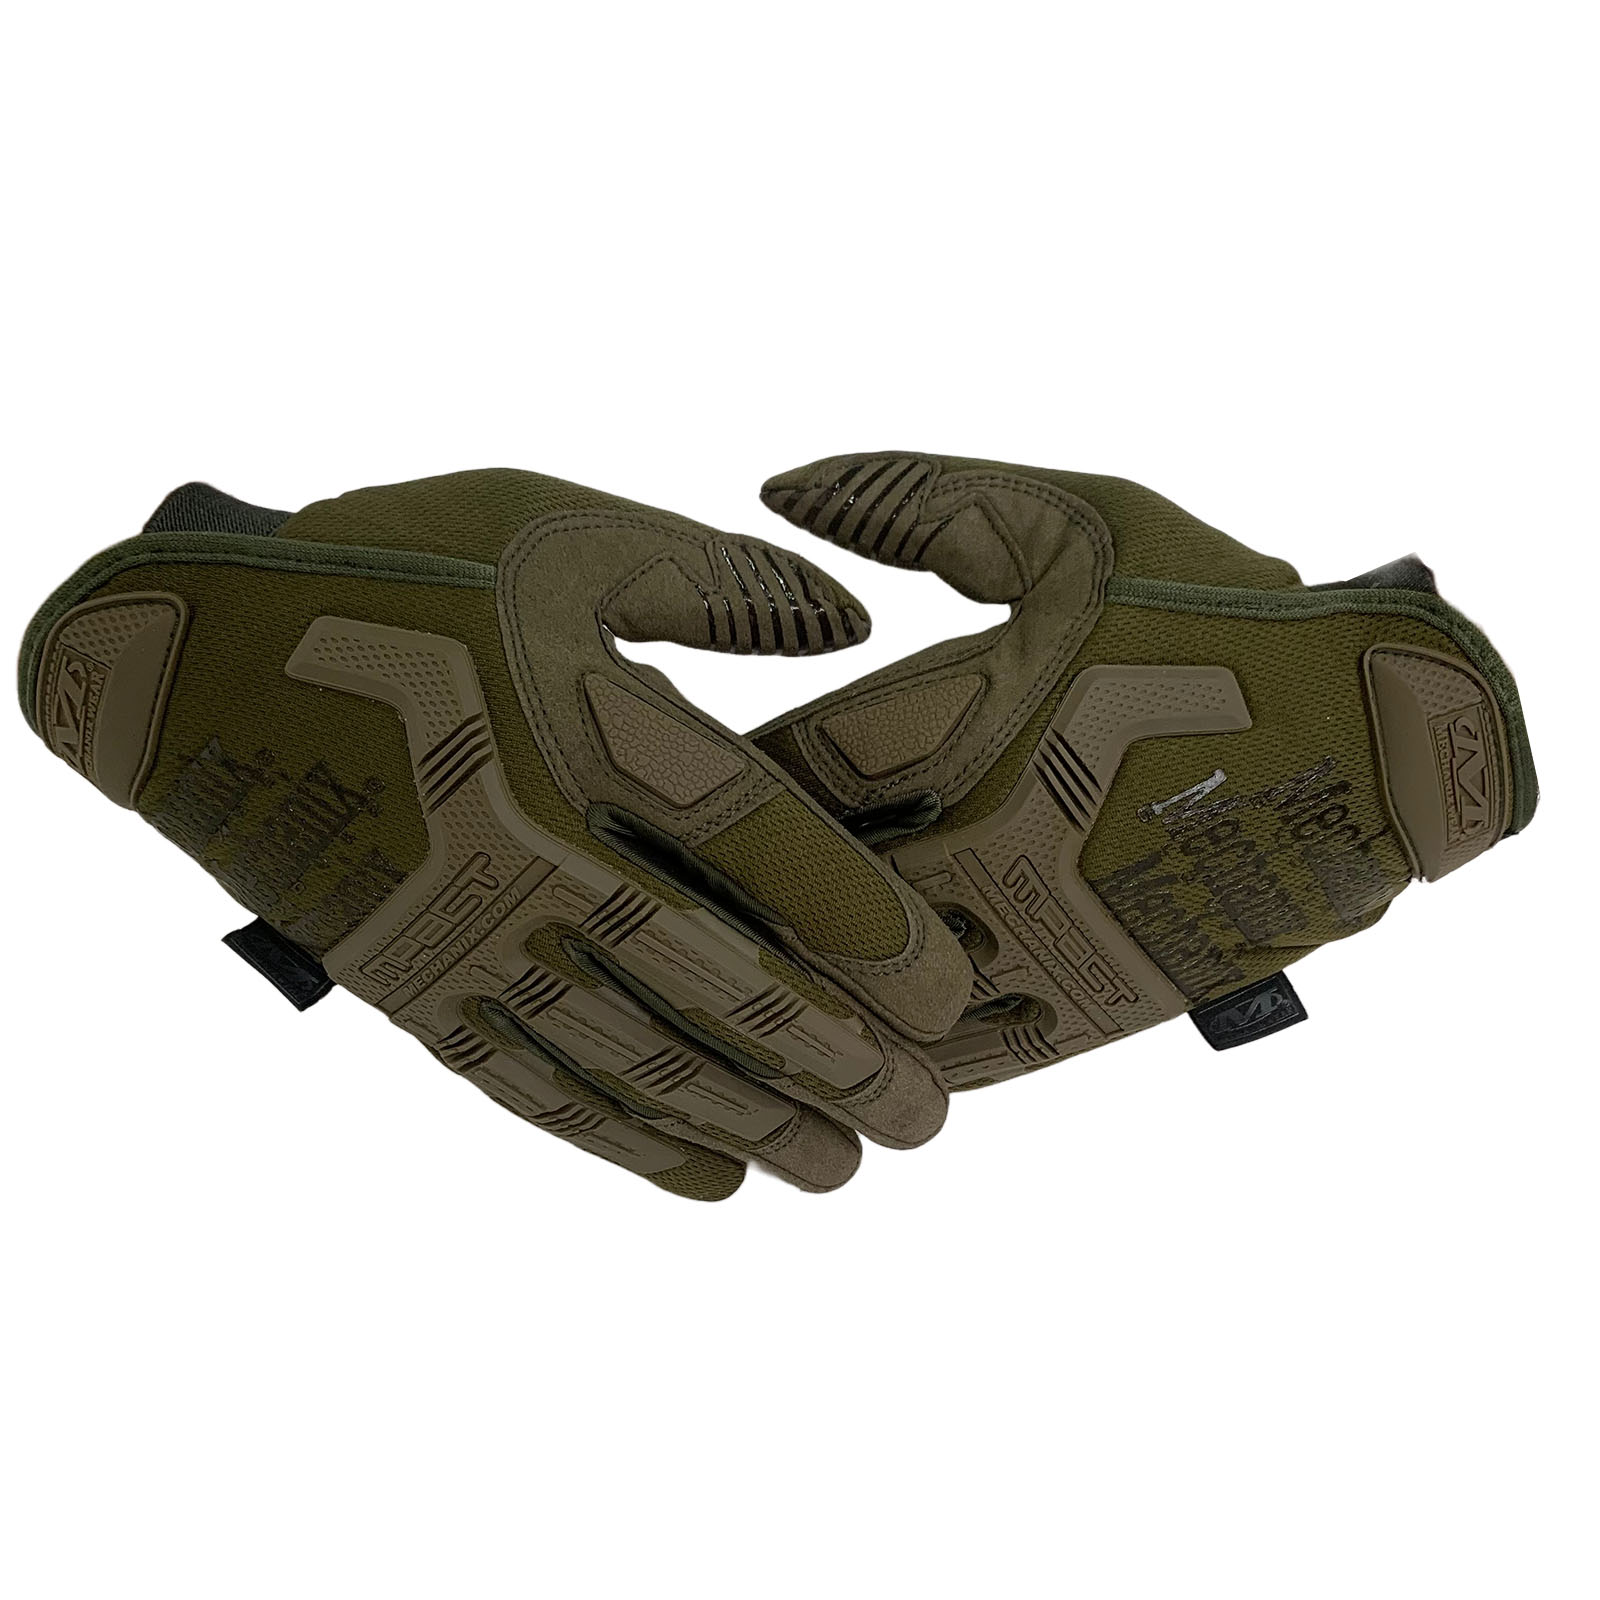 Купить тактические перчатки Mechanix Wear (хаки-олива)